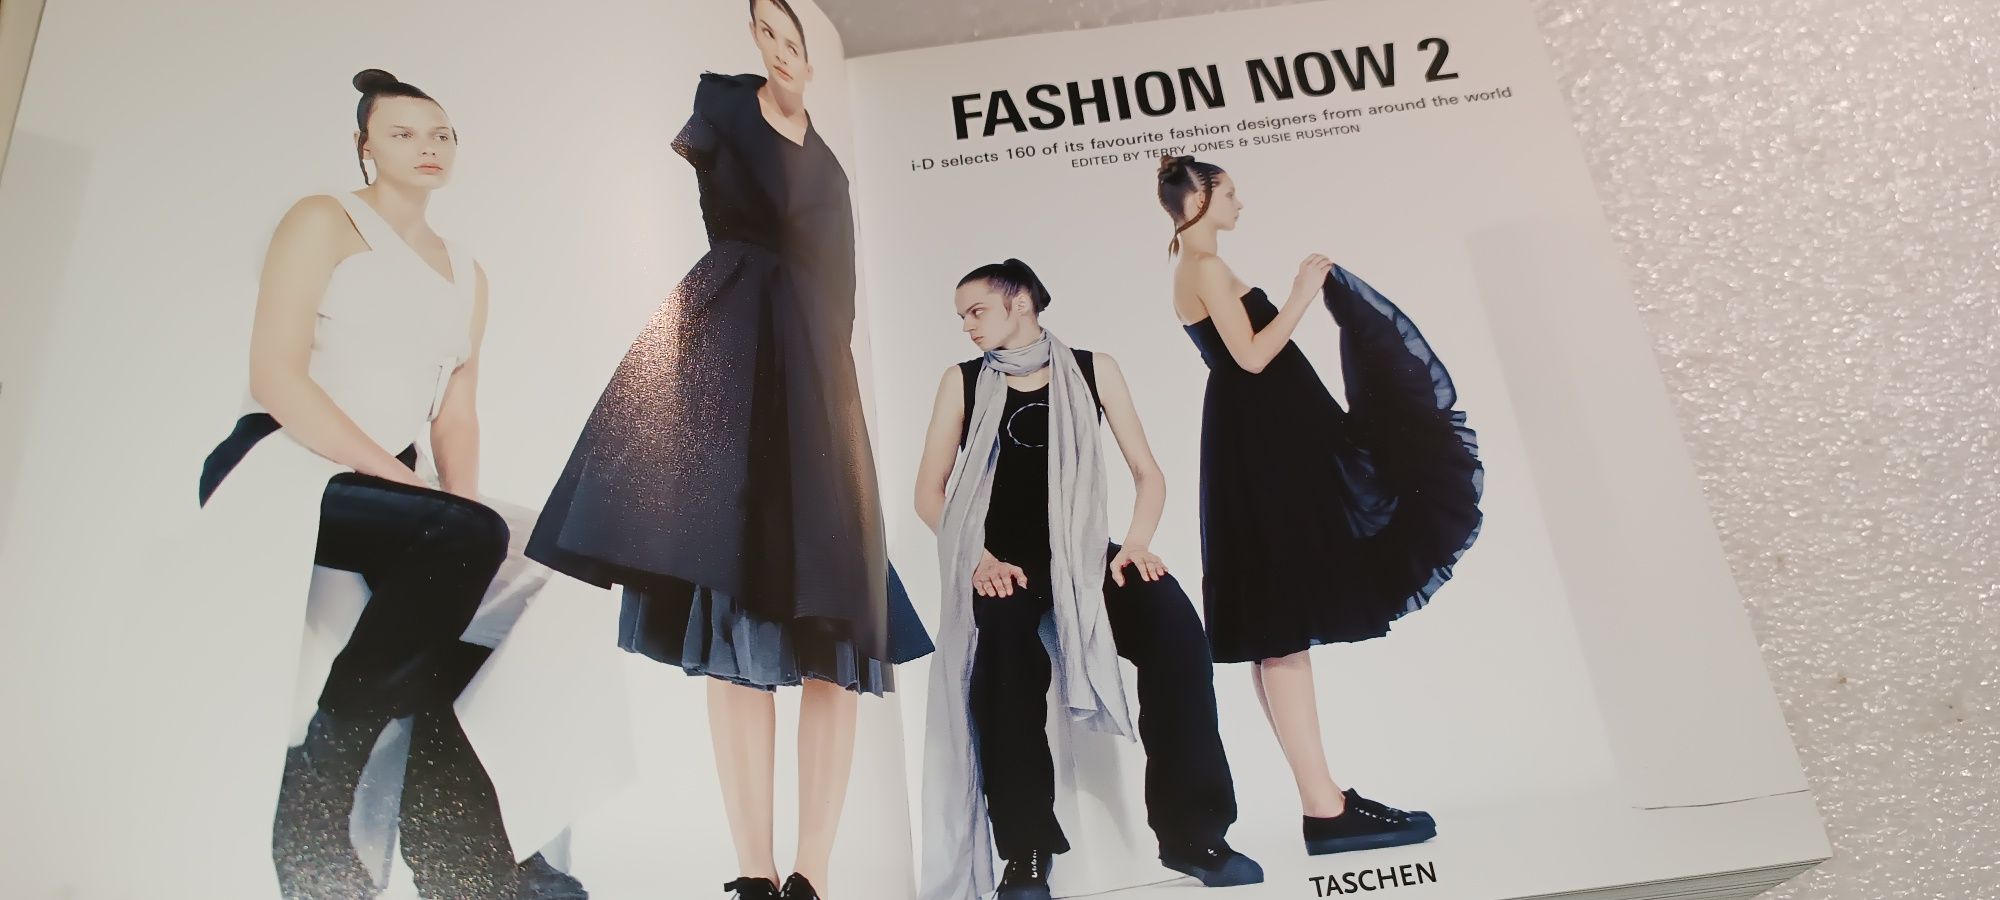 Livro Fashion Now 2 edição Taschen 25 aniversário